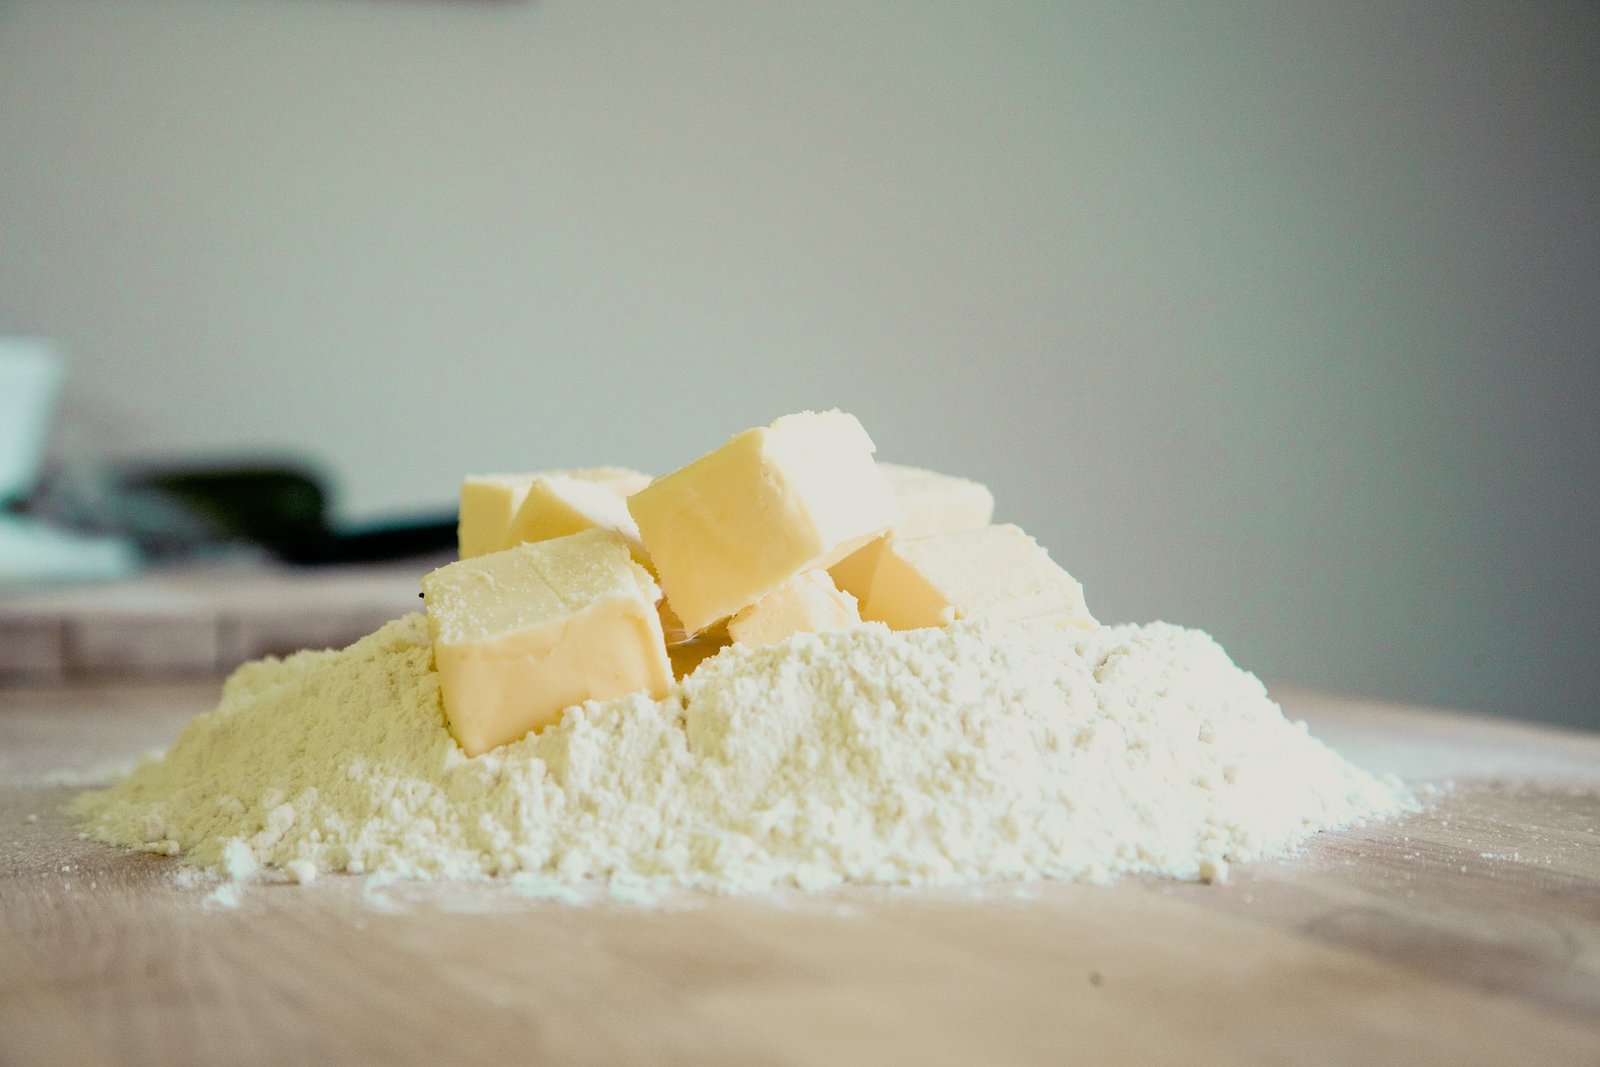 La farine et le beurre offrent généralement des saveurs différentes, alors faites attention aux quantités.